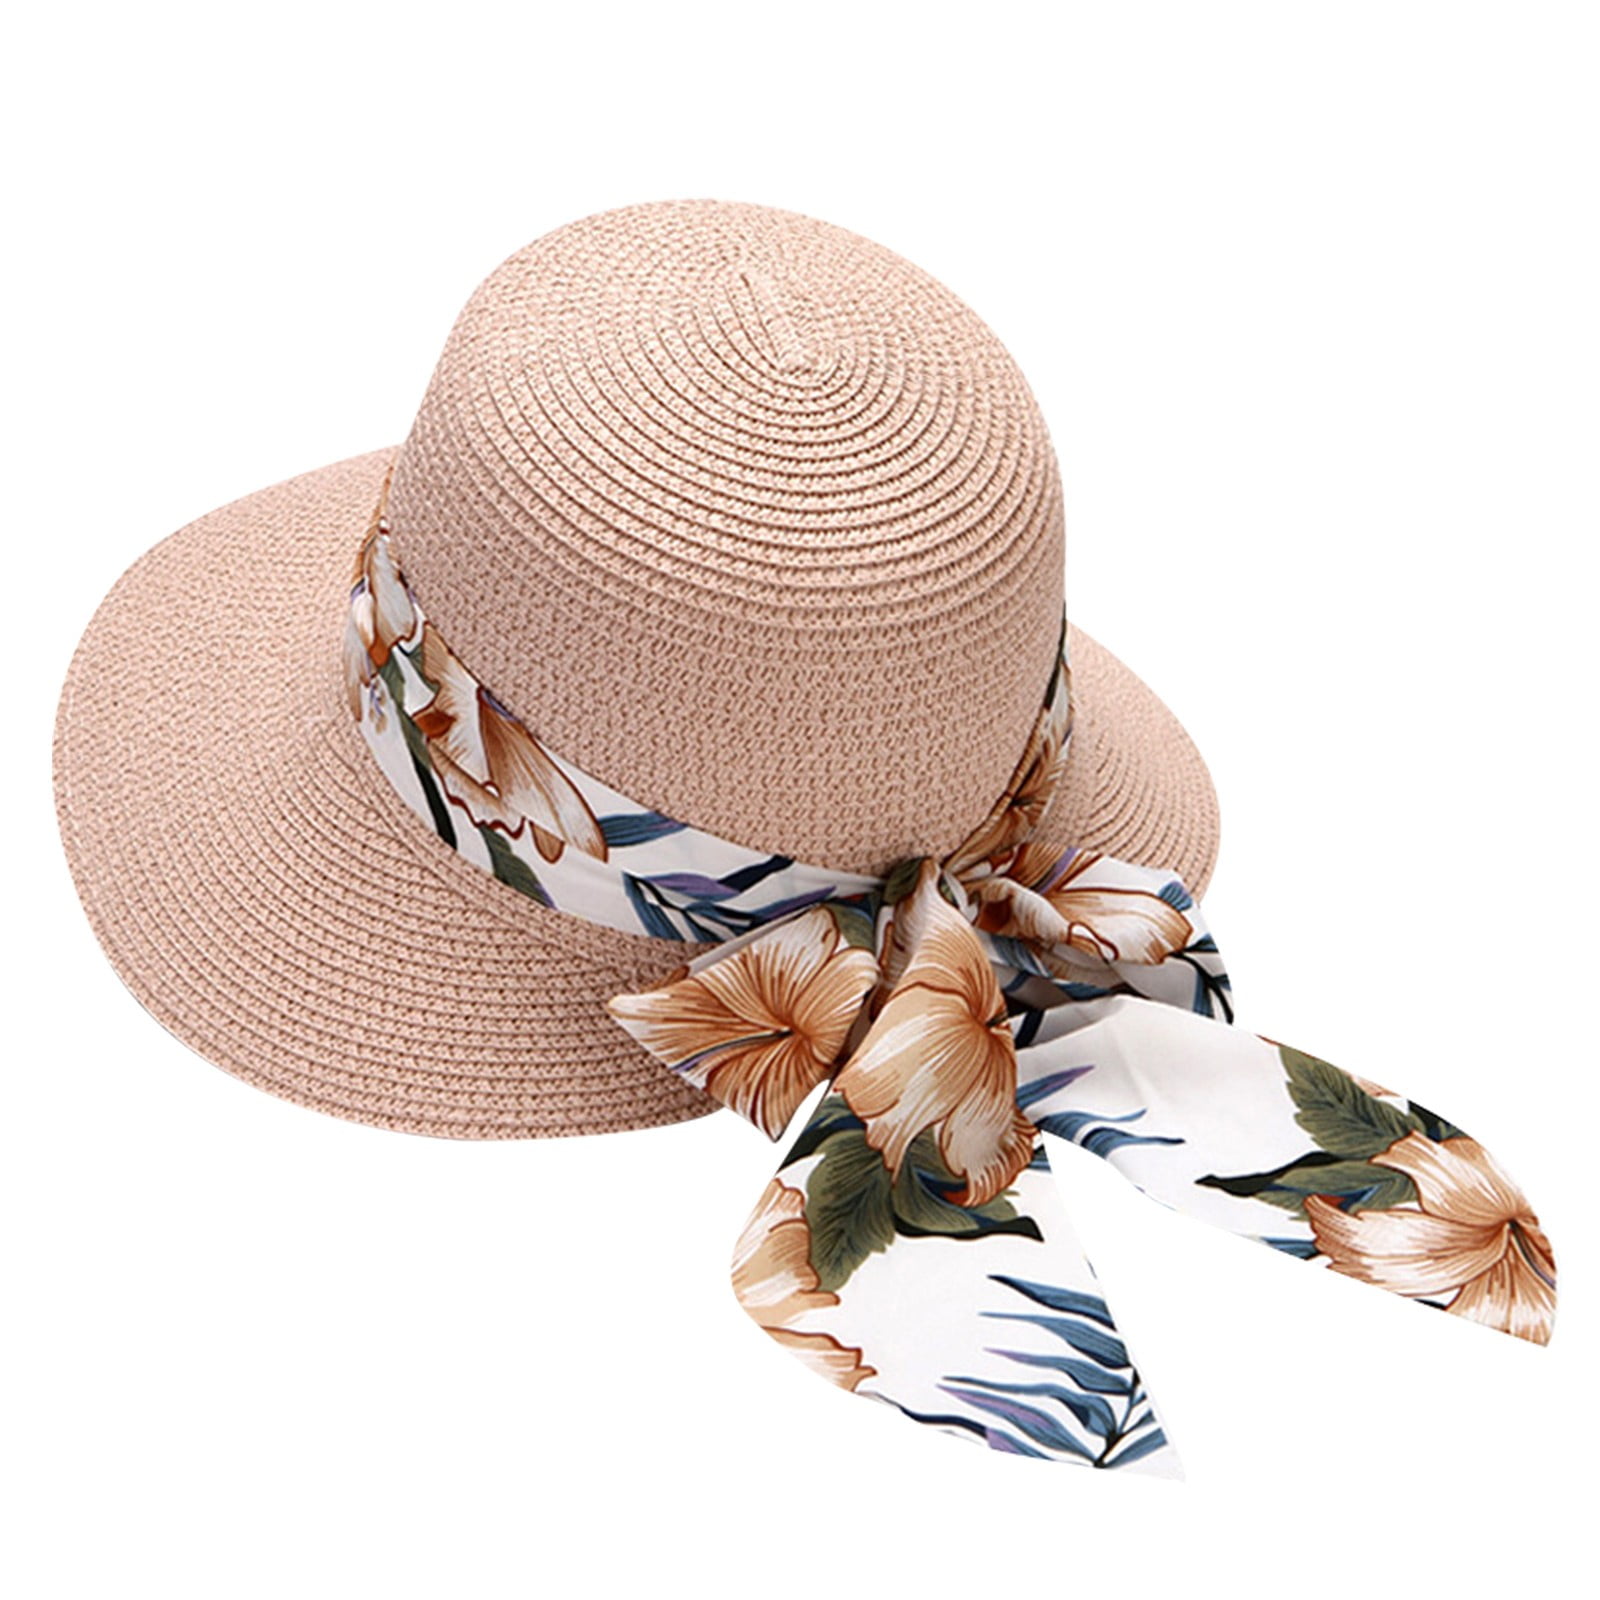 ZHAGHMIN Black Hats For Men Women Summer Wide Straw Hat Beach